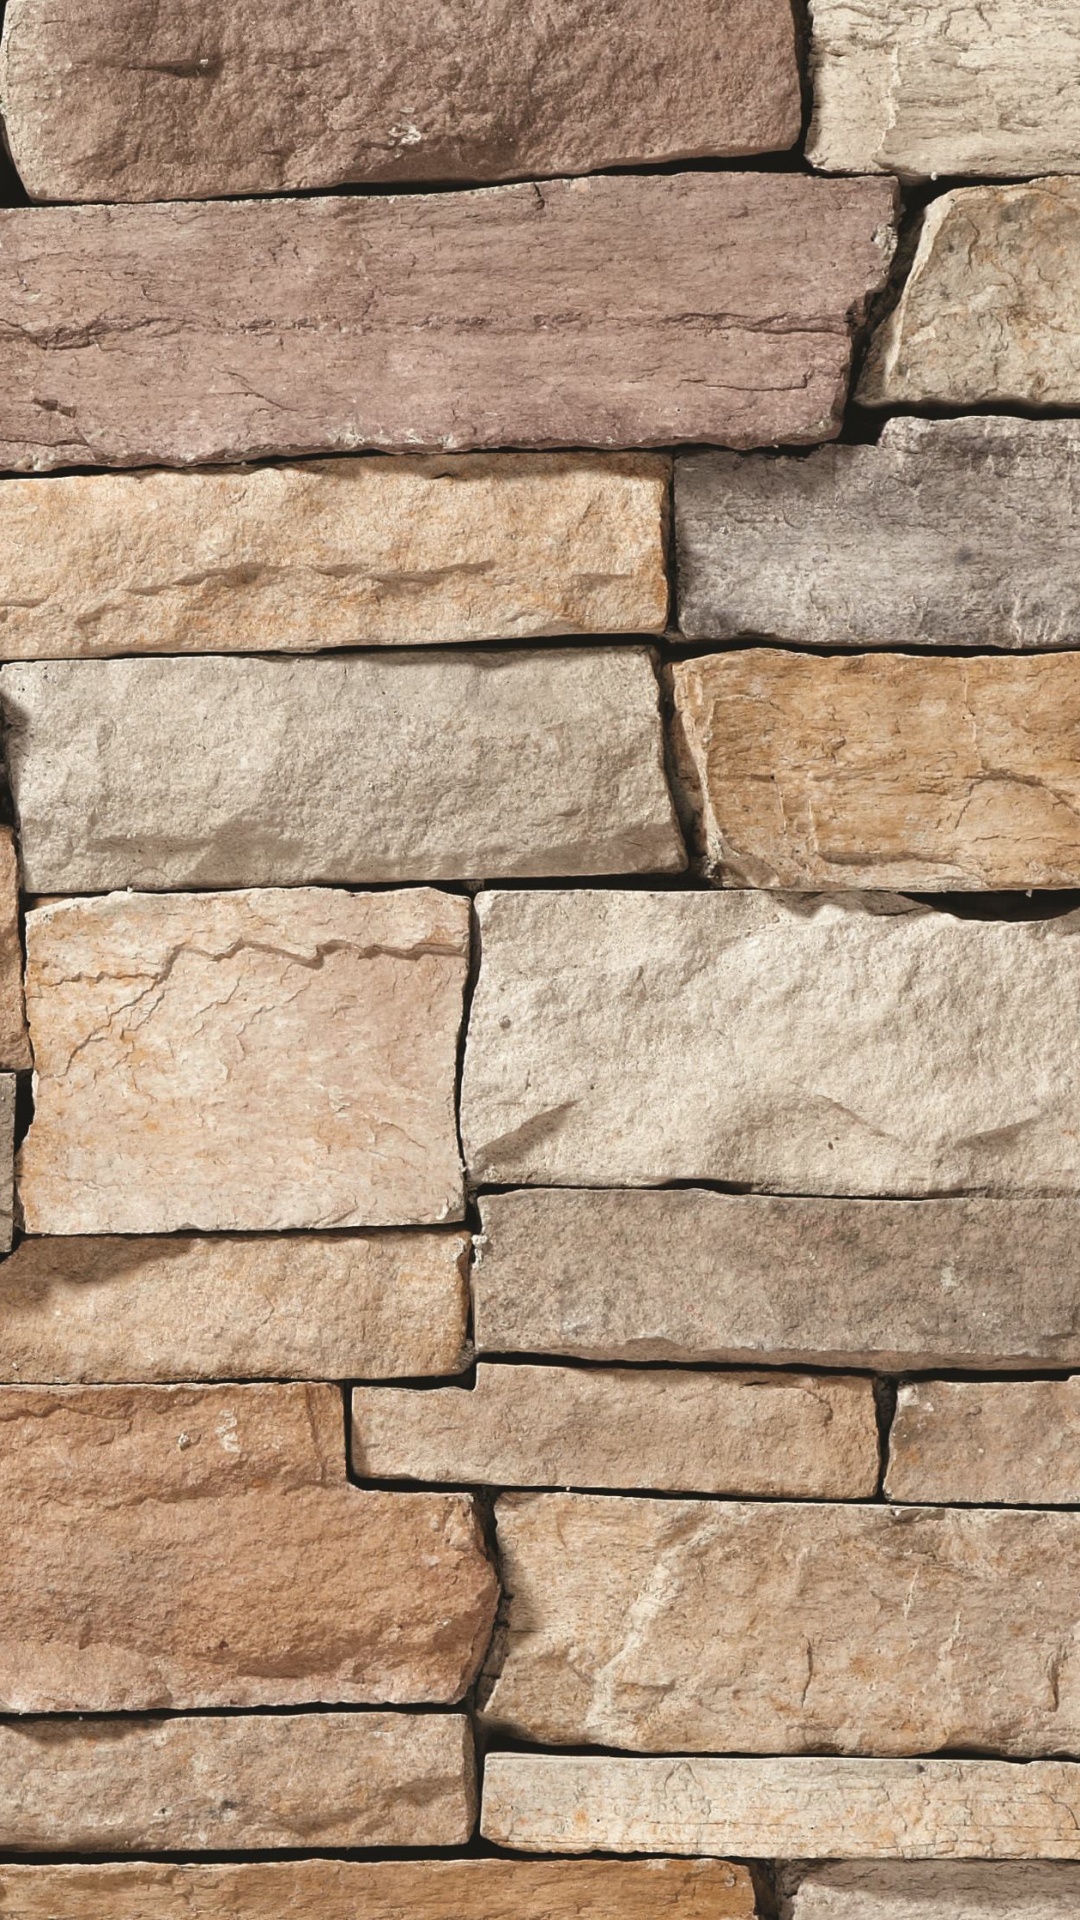 石壁, 砖石, 砌砖, 砖, 石饰面 壁纸 1080x1920 允许